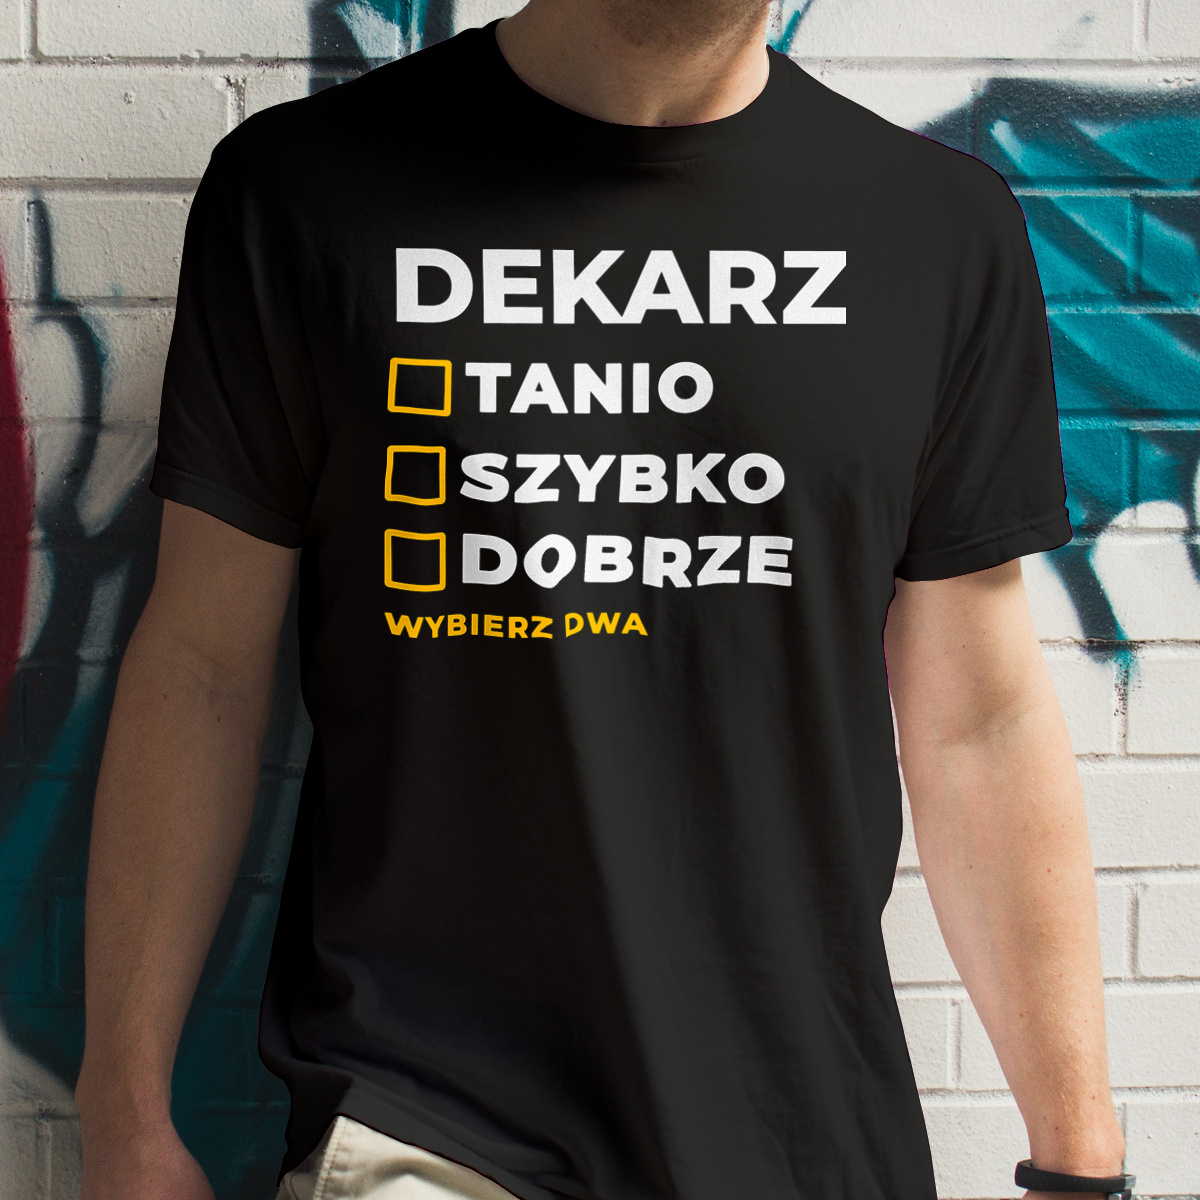 Szybko Tanio Dobrze Dekarz - Męska Koszulka Czarna